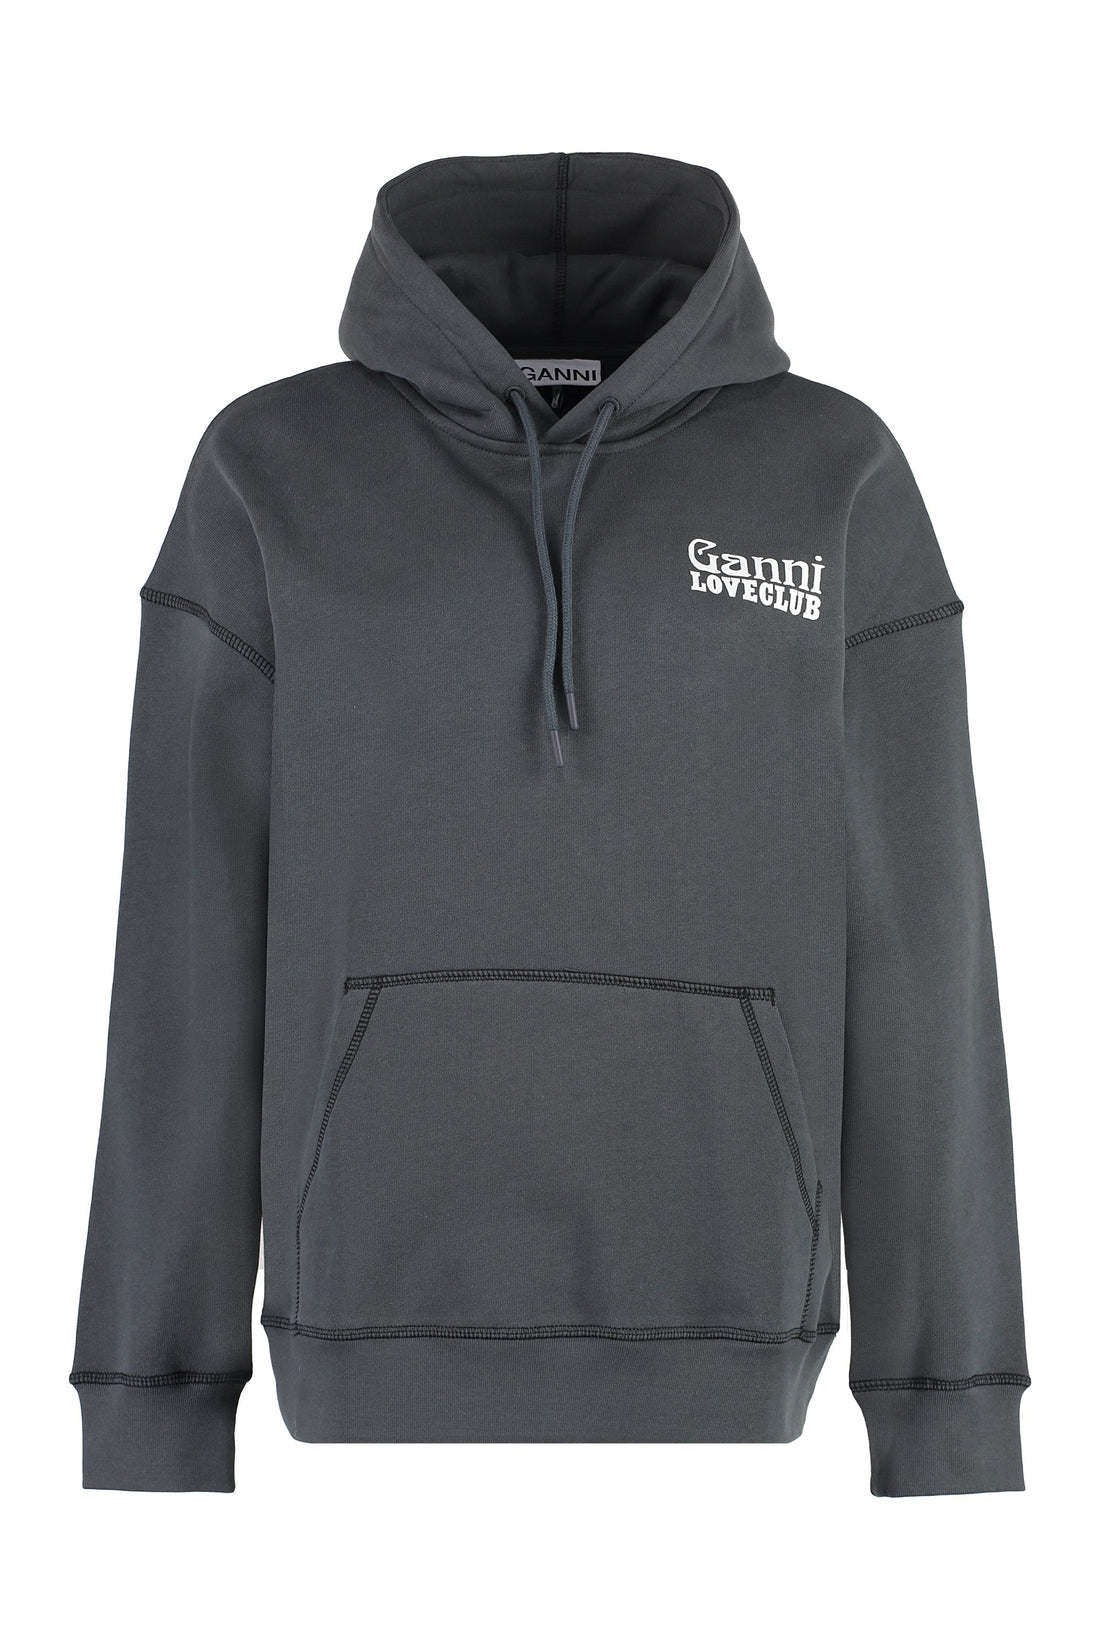 GANNI-OUTLET-SALE-Logo cotton hoodie-ARCHIVIST